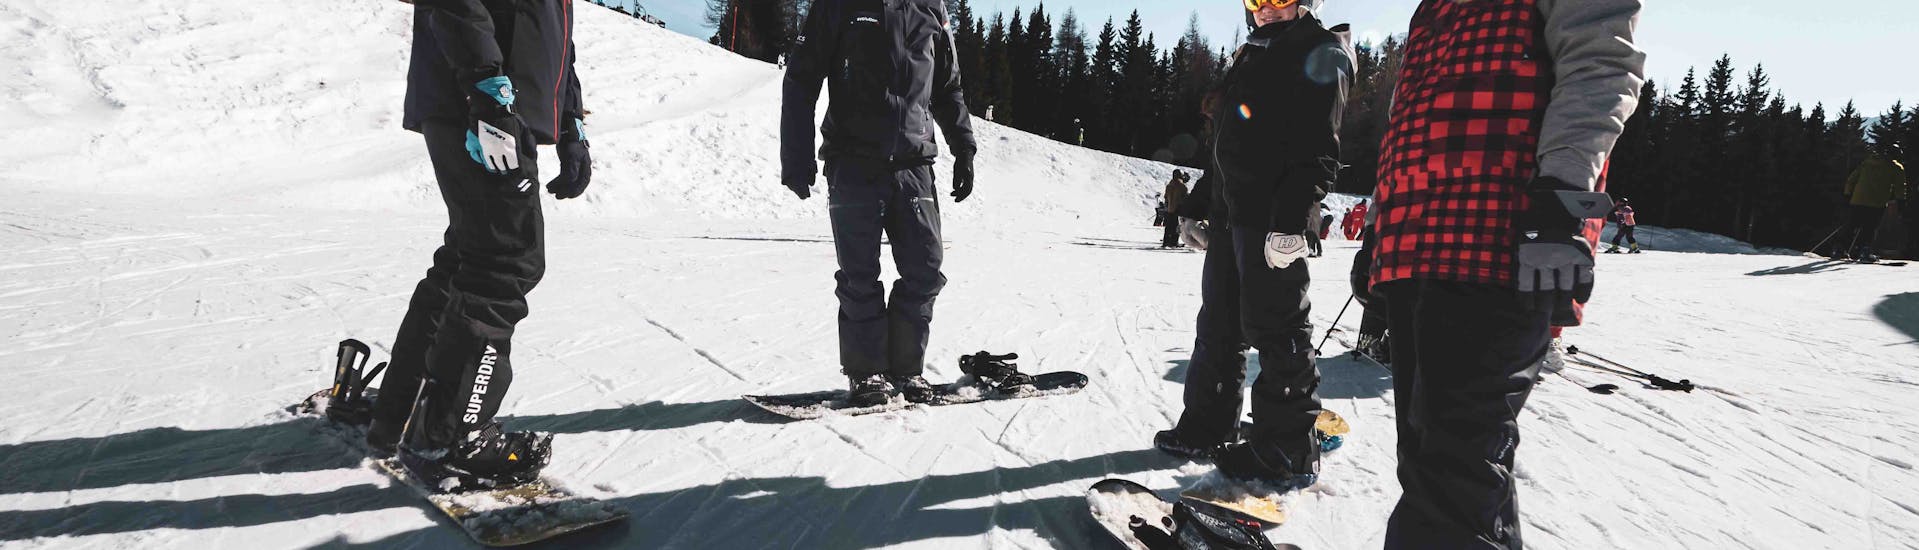 Lezioni di Snowboard a partire da 10 anni per tutti i livelli con Arc Aventures by Evolution 2 1800 .